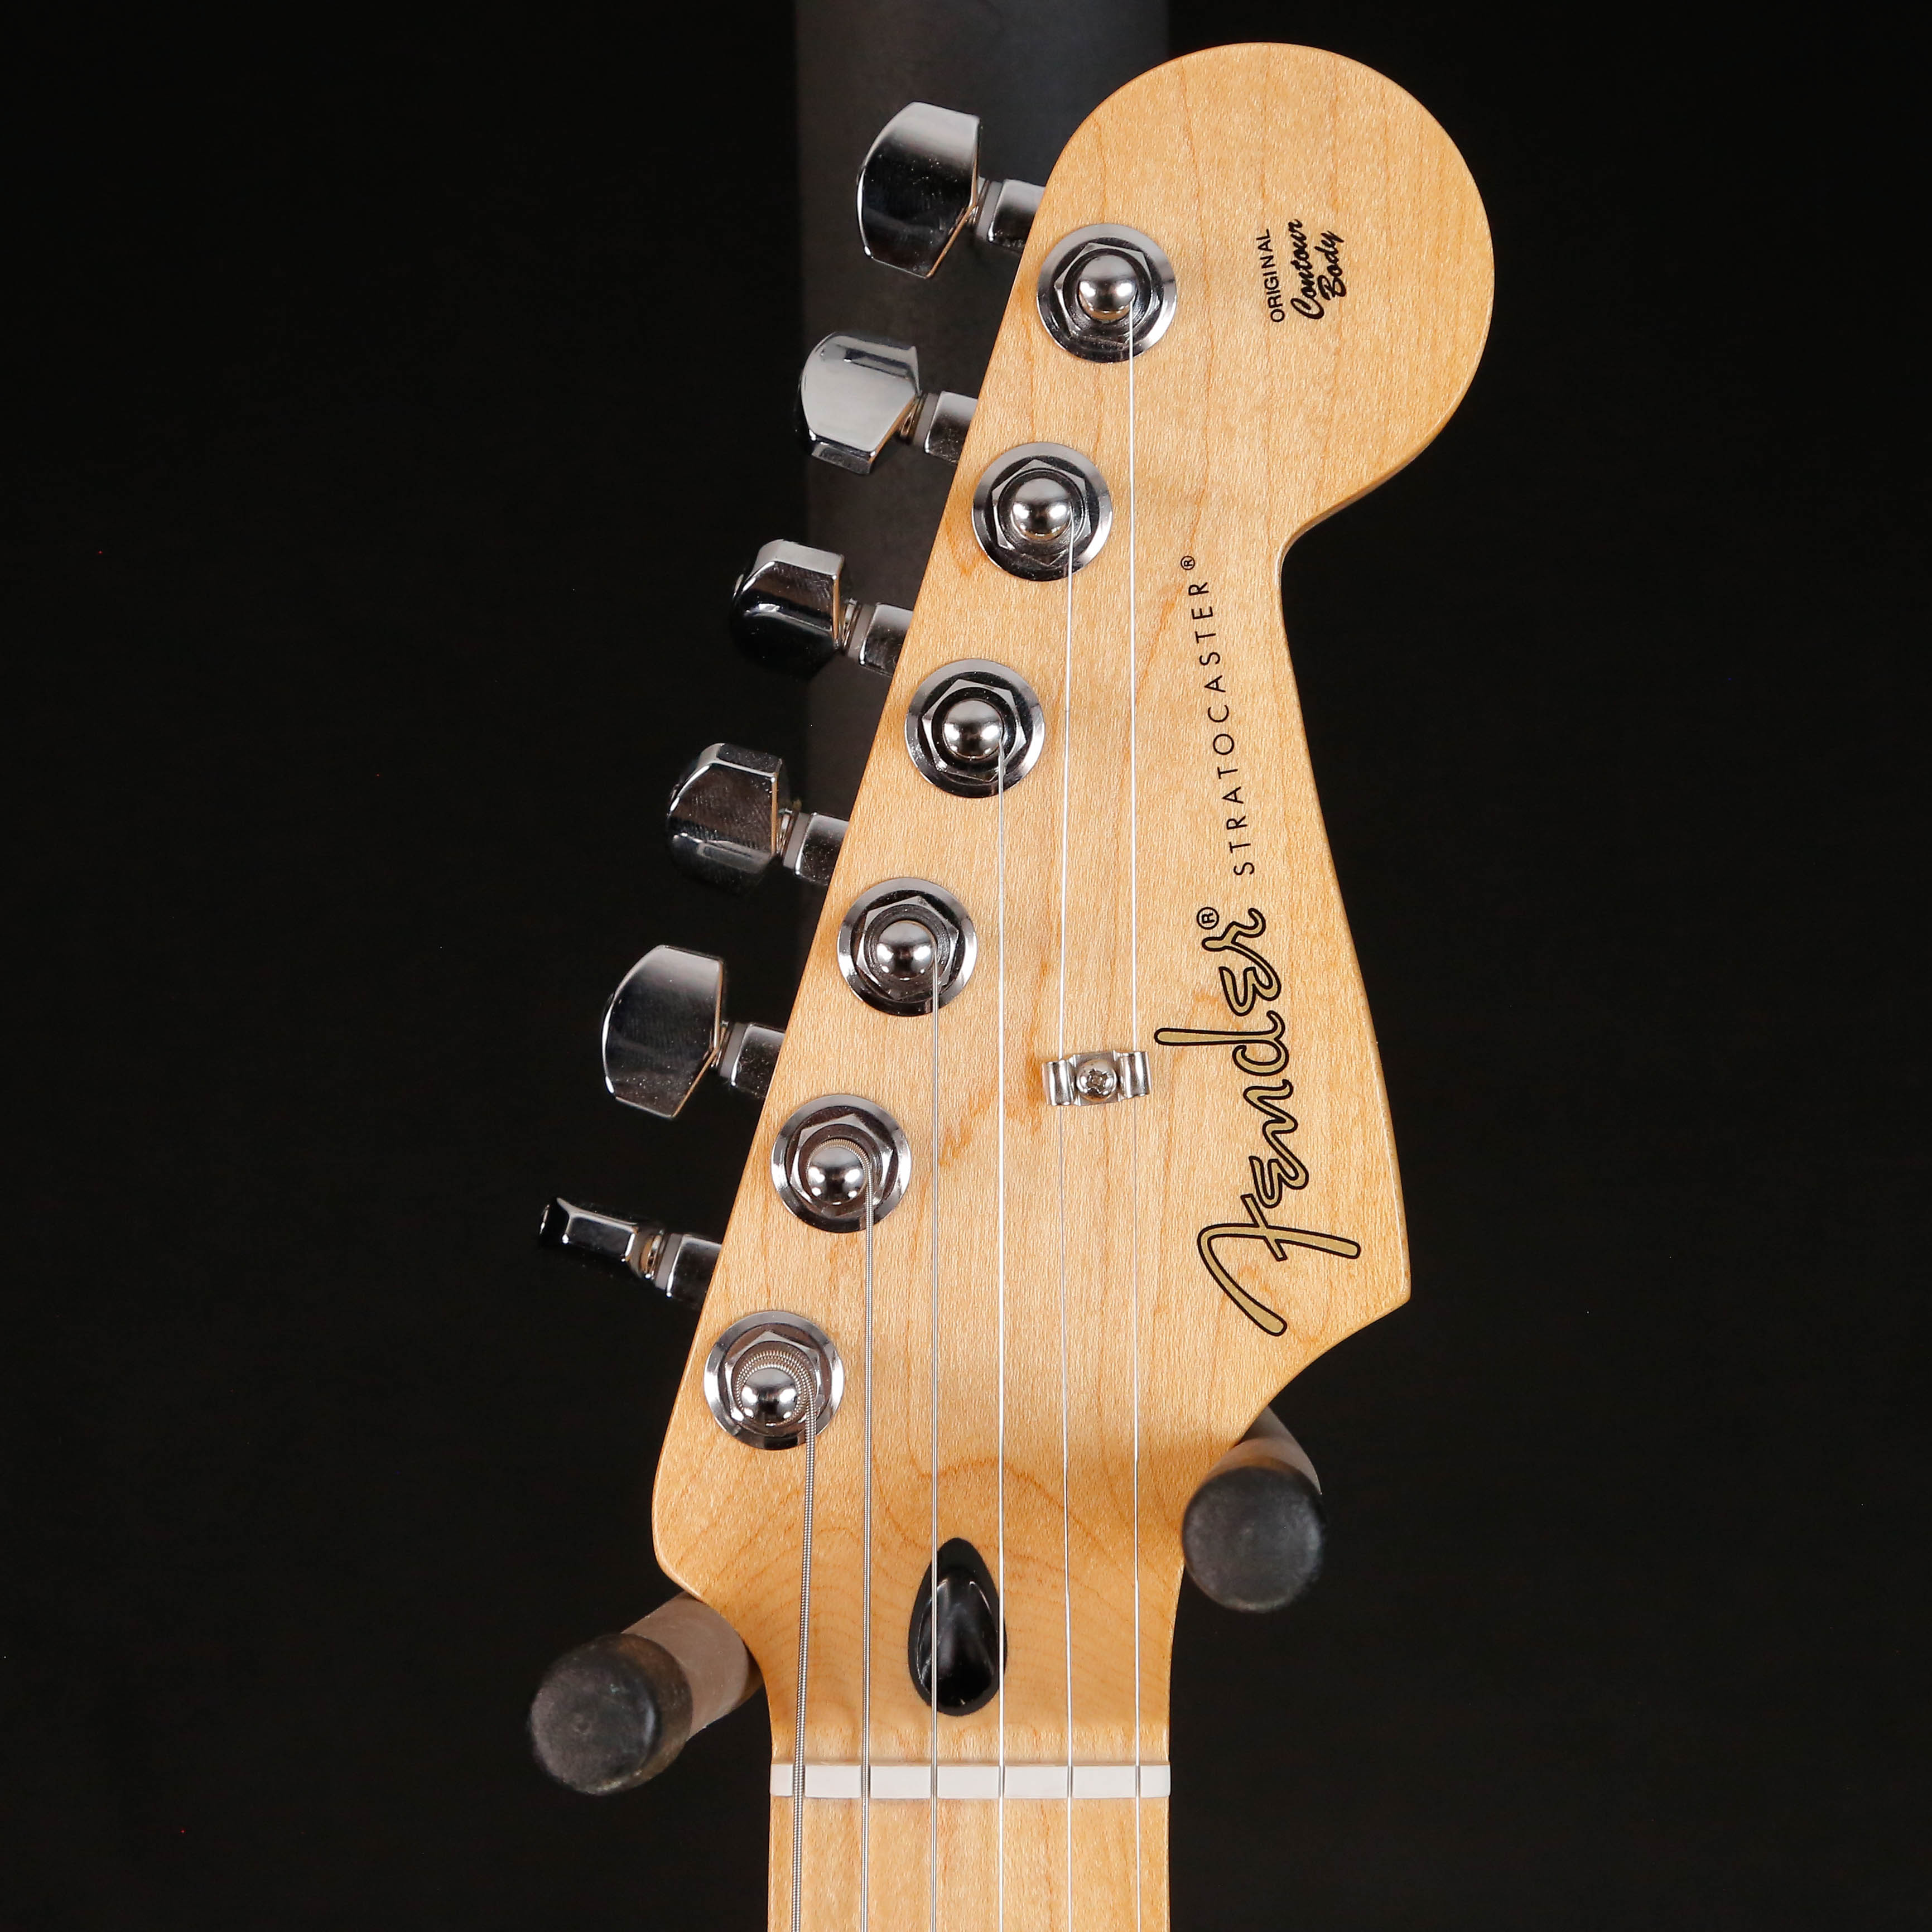 Fender Player Stratocaster HSS, Maple Fb, 3-Color Sunburst